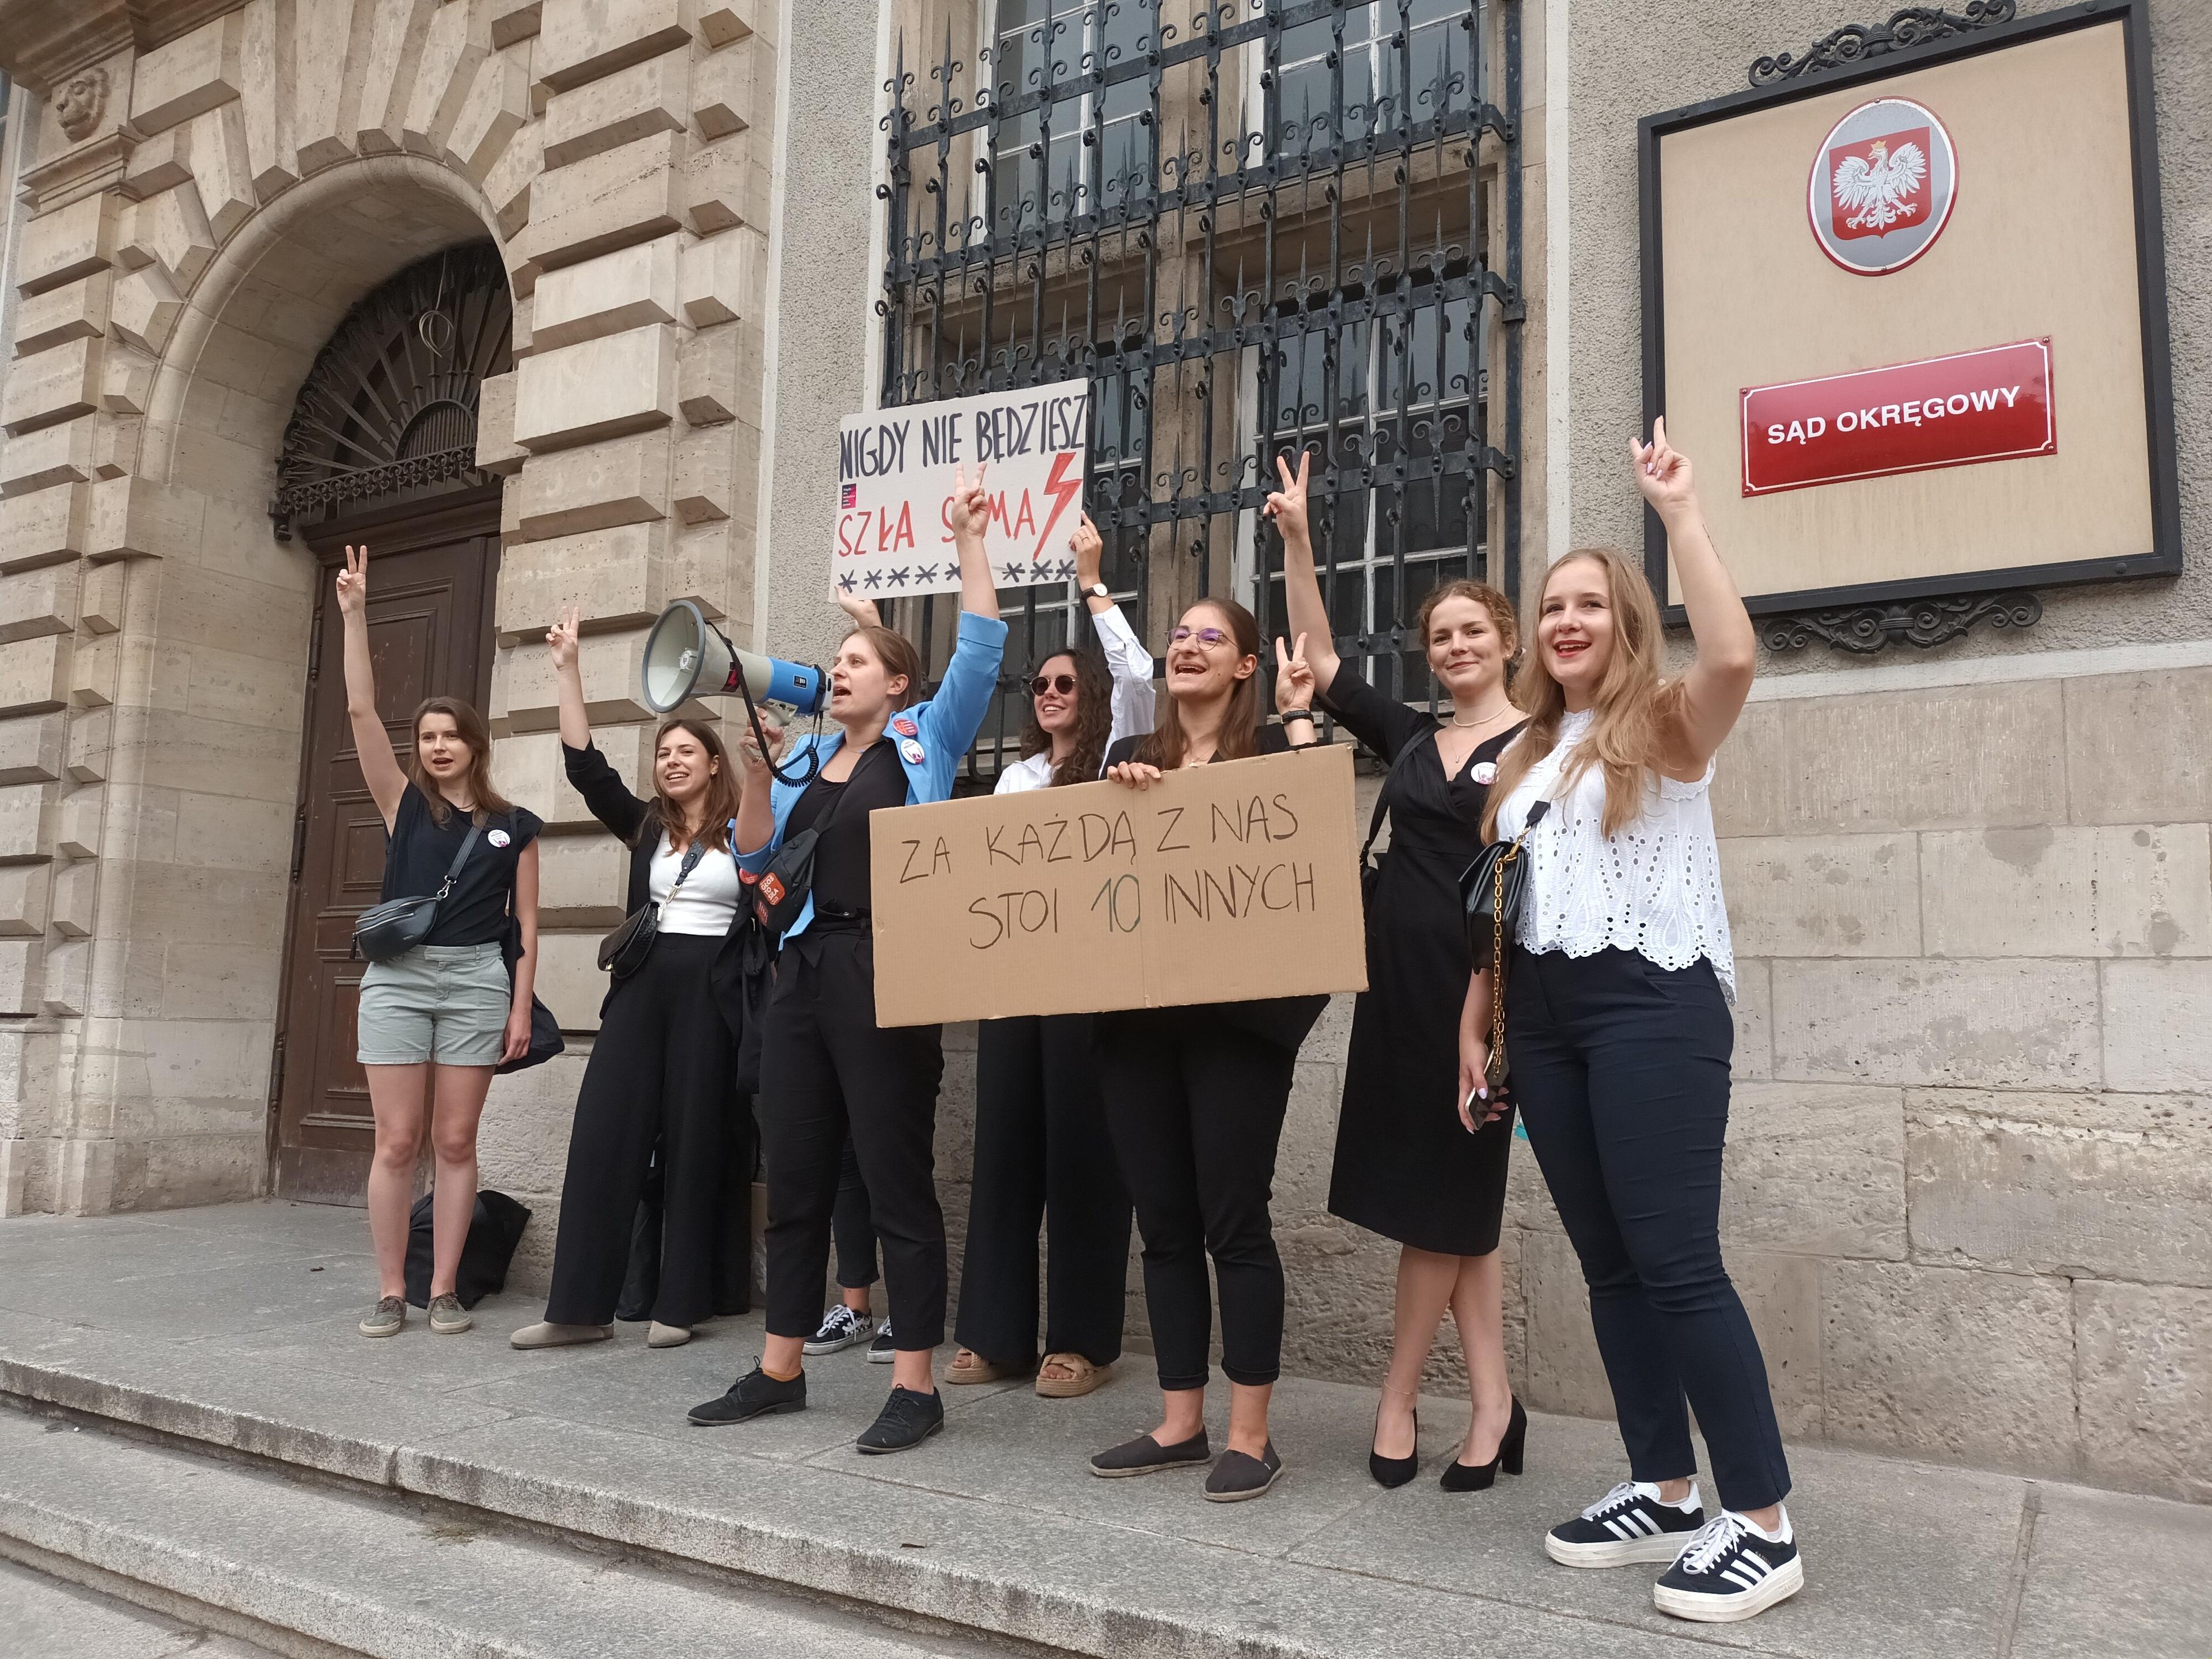 Kobiety przed sądem okręgowym. Trzymają transparenty "Nigdy nie będziesz szła sama" i "Za każdą z nas stoi 10 innych". Wśród kobuet - młoda osoba z długimi włosami w ciemnej sukience- Julia Landowska